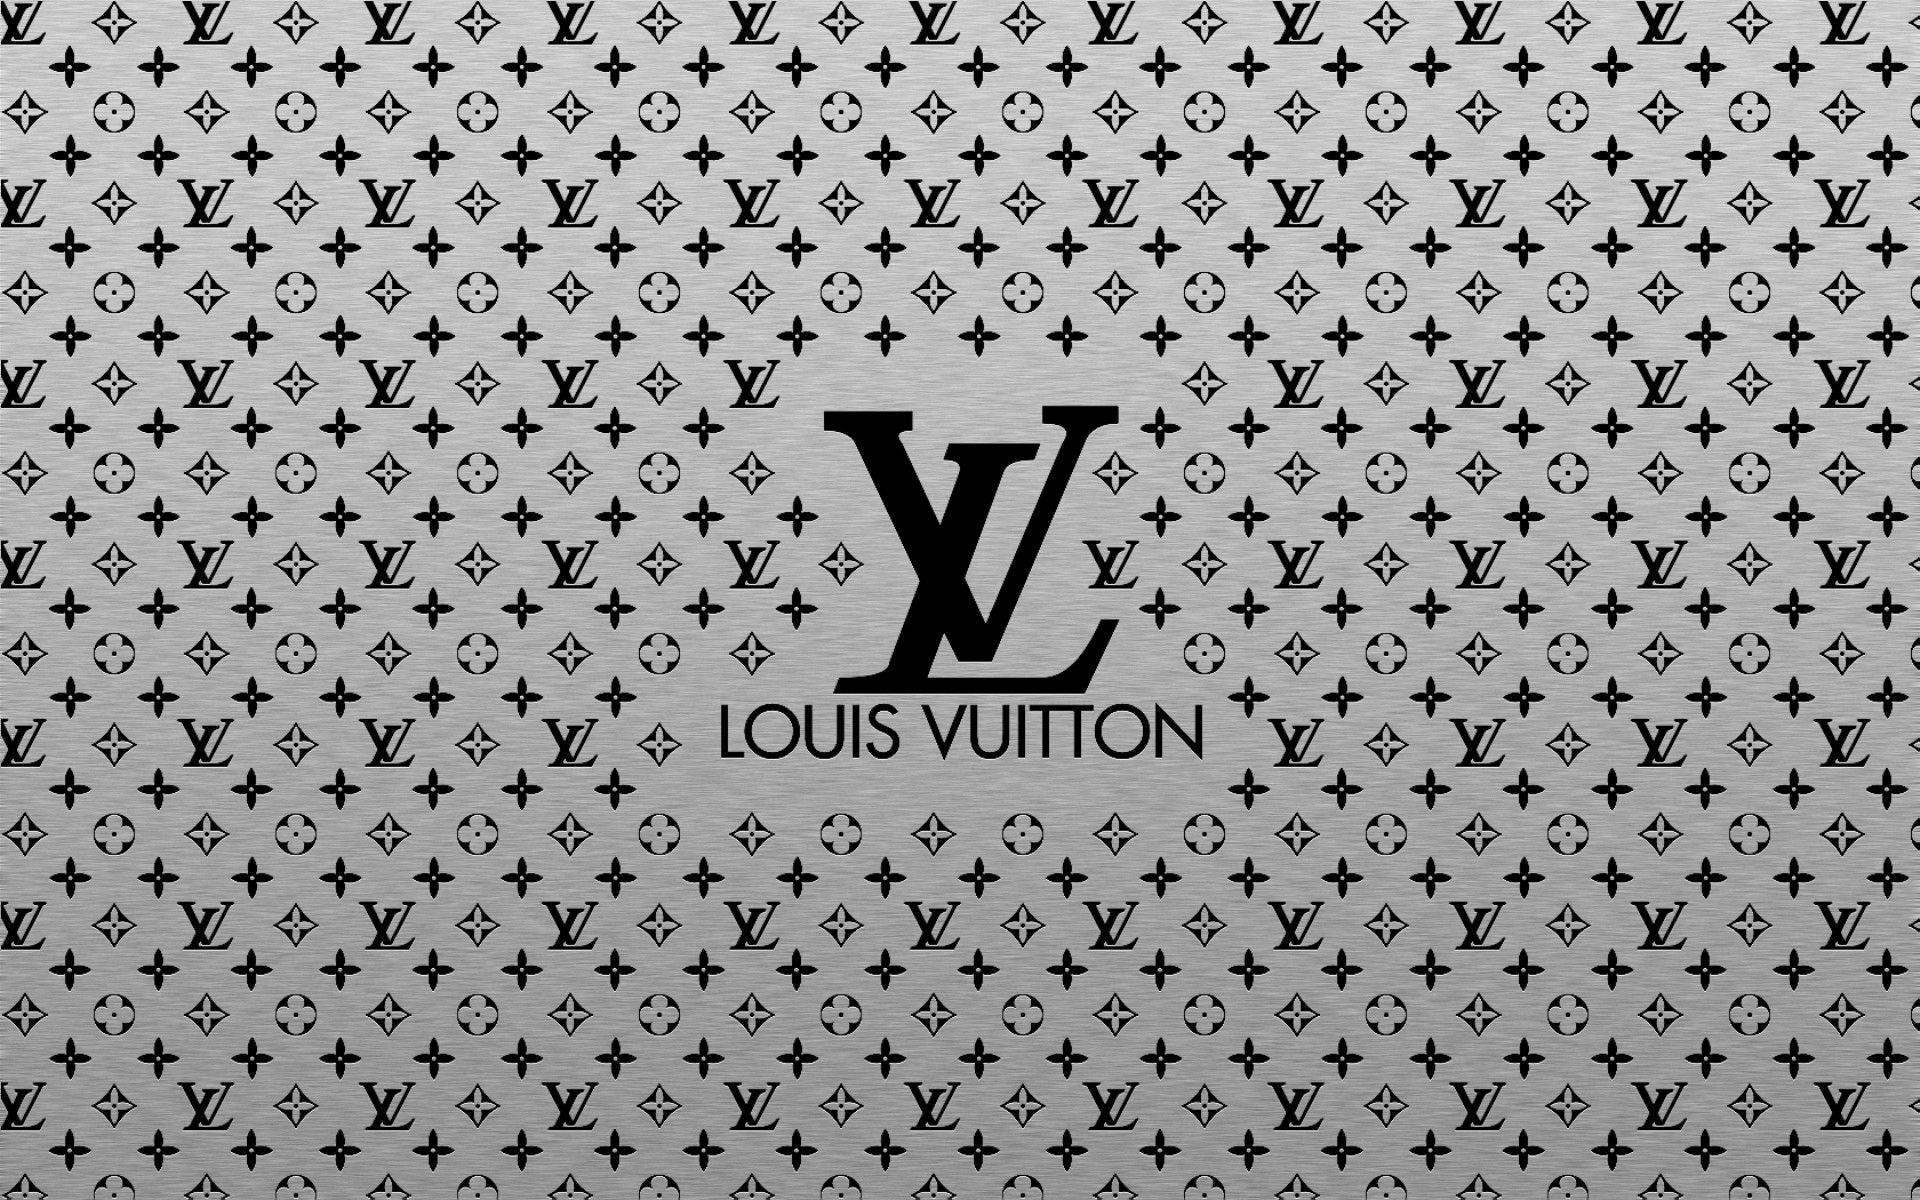 Fonds d'Ã©cran Louis Vuitton : tous les wallpapers Louis Vuitton